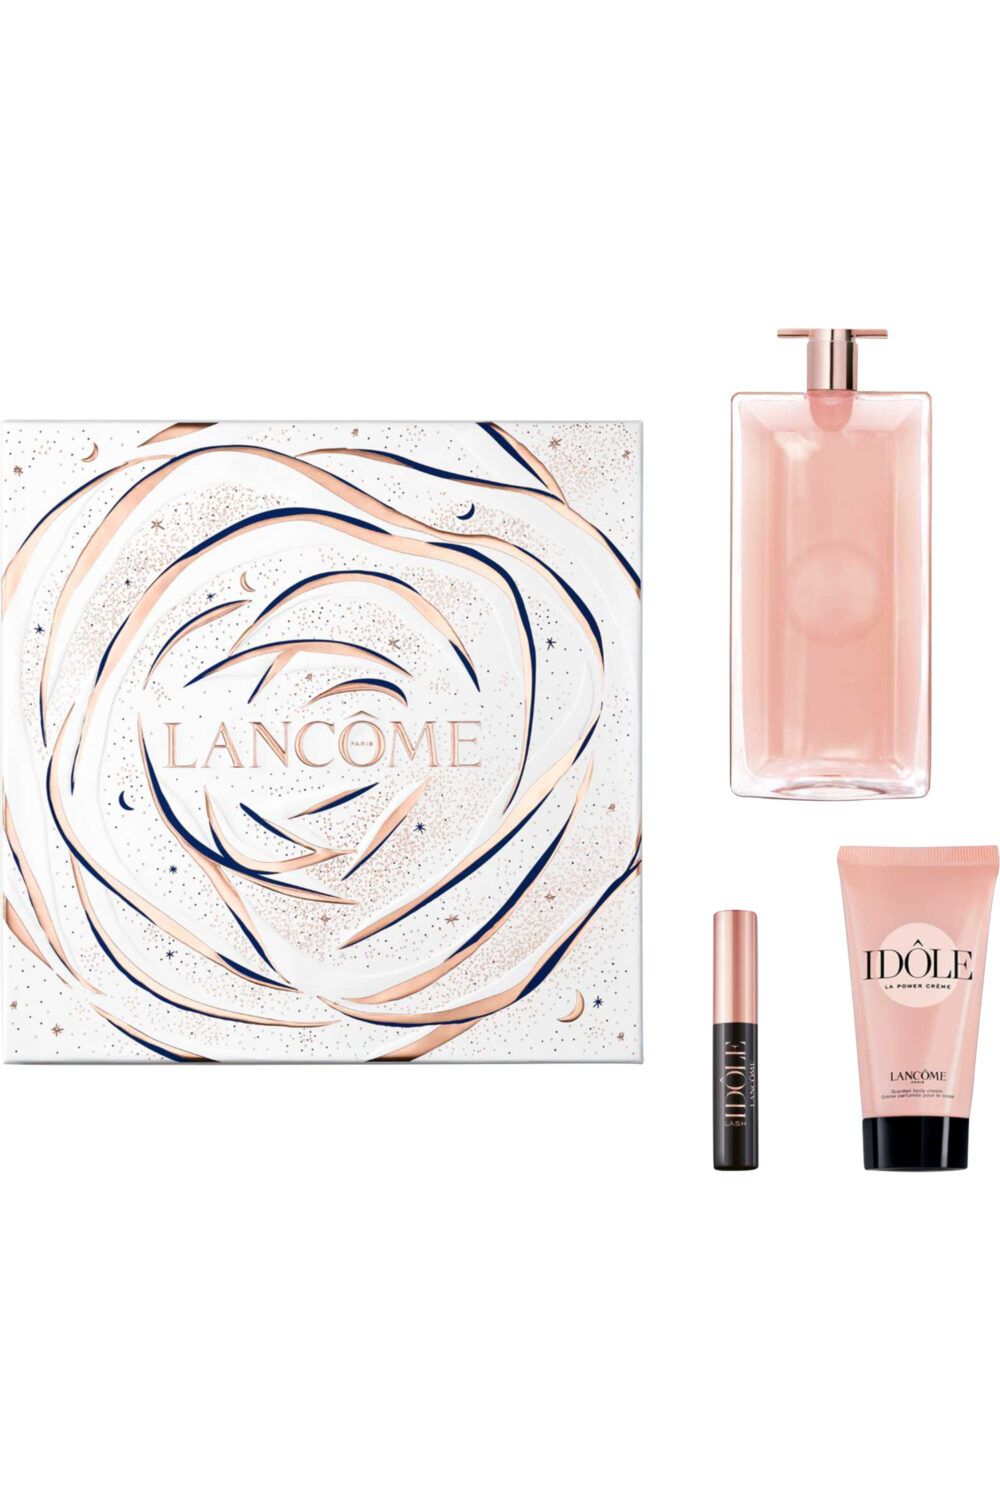 Lancôme - Coffret Idôle Eau de Parfum & crème corps + mascara offert